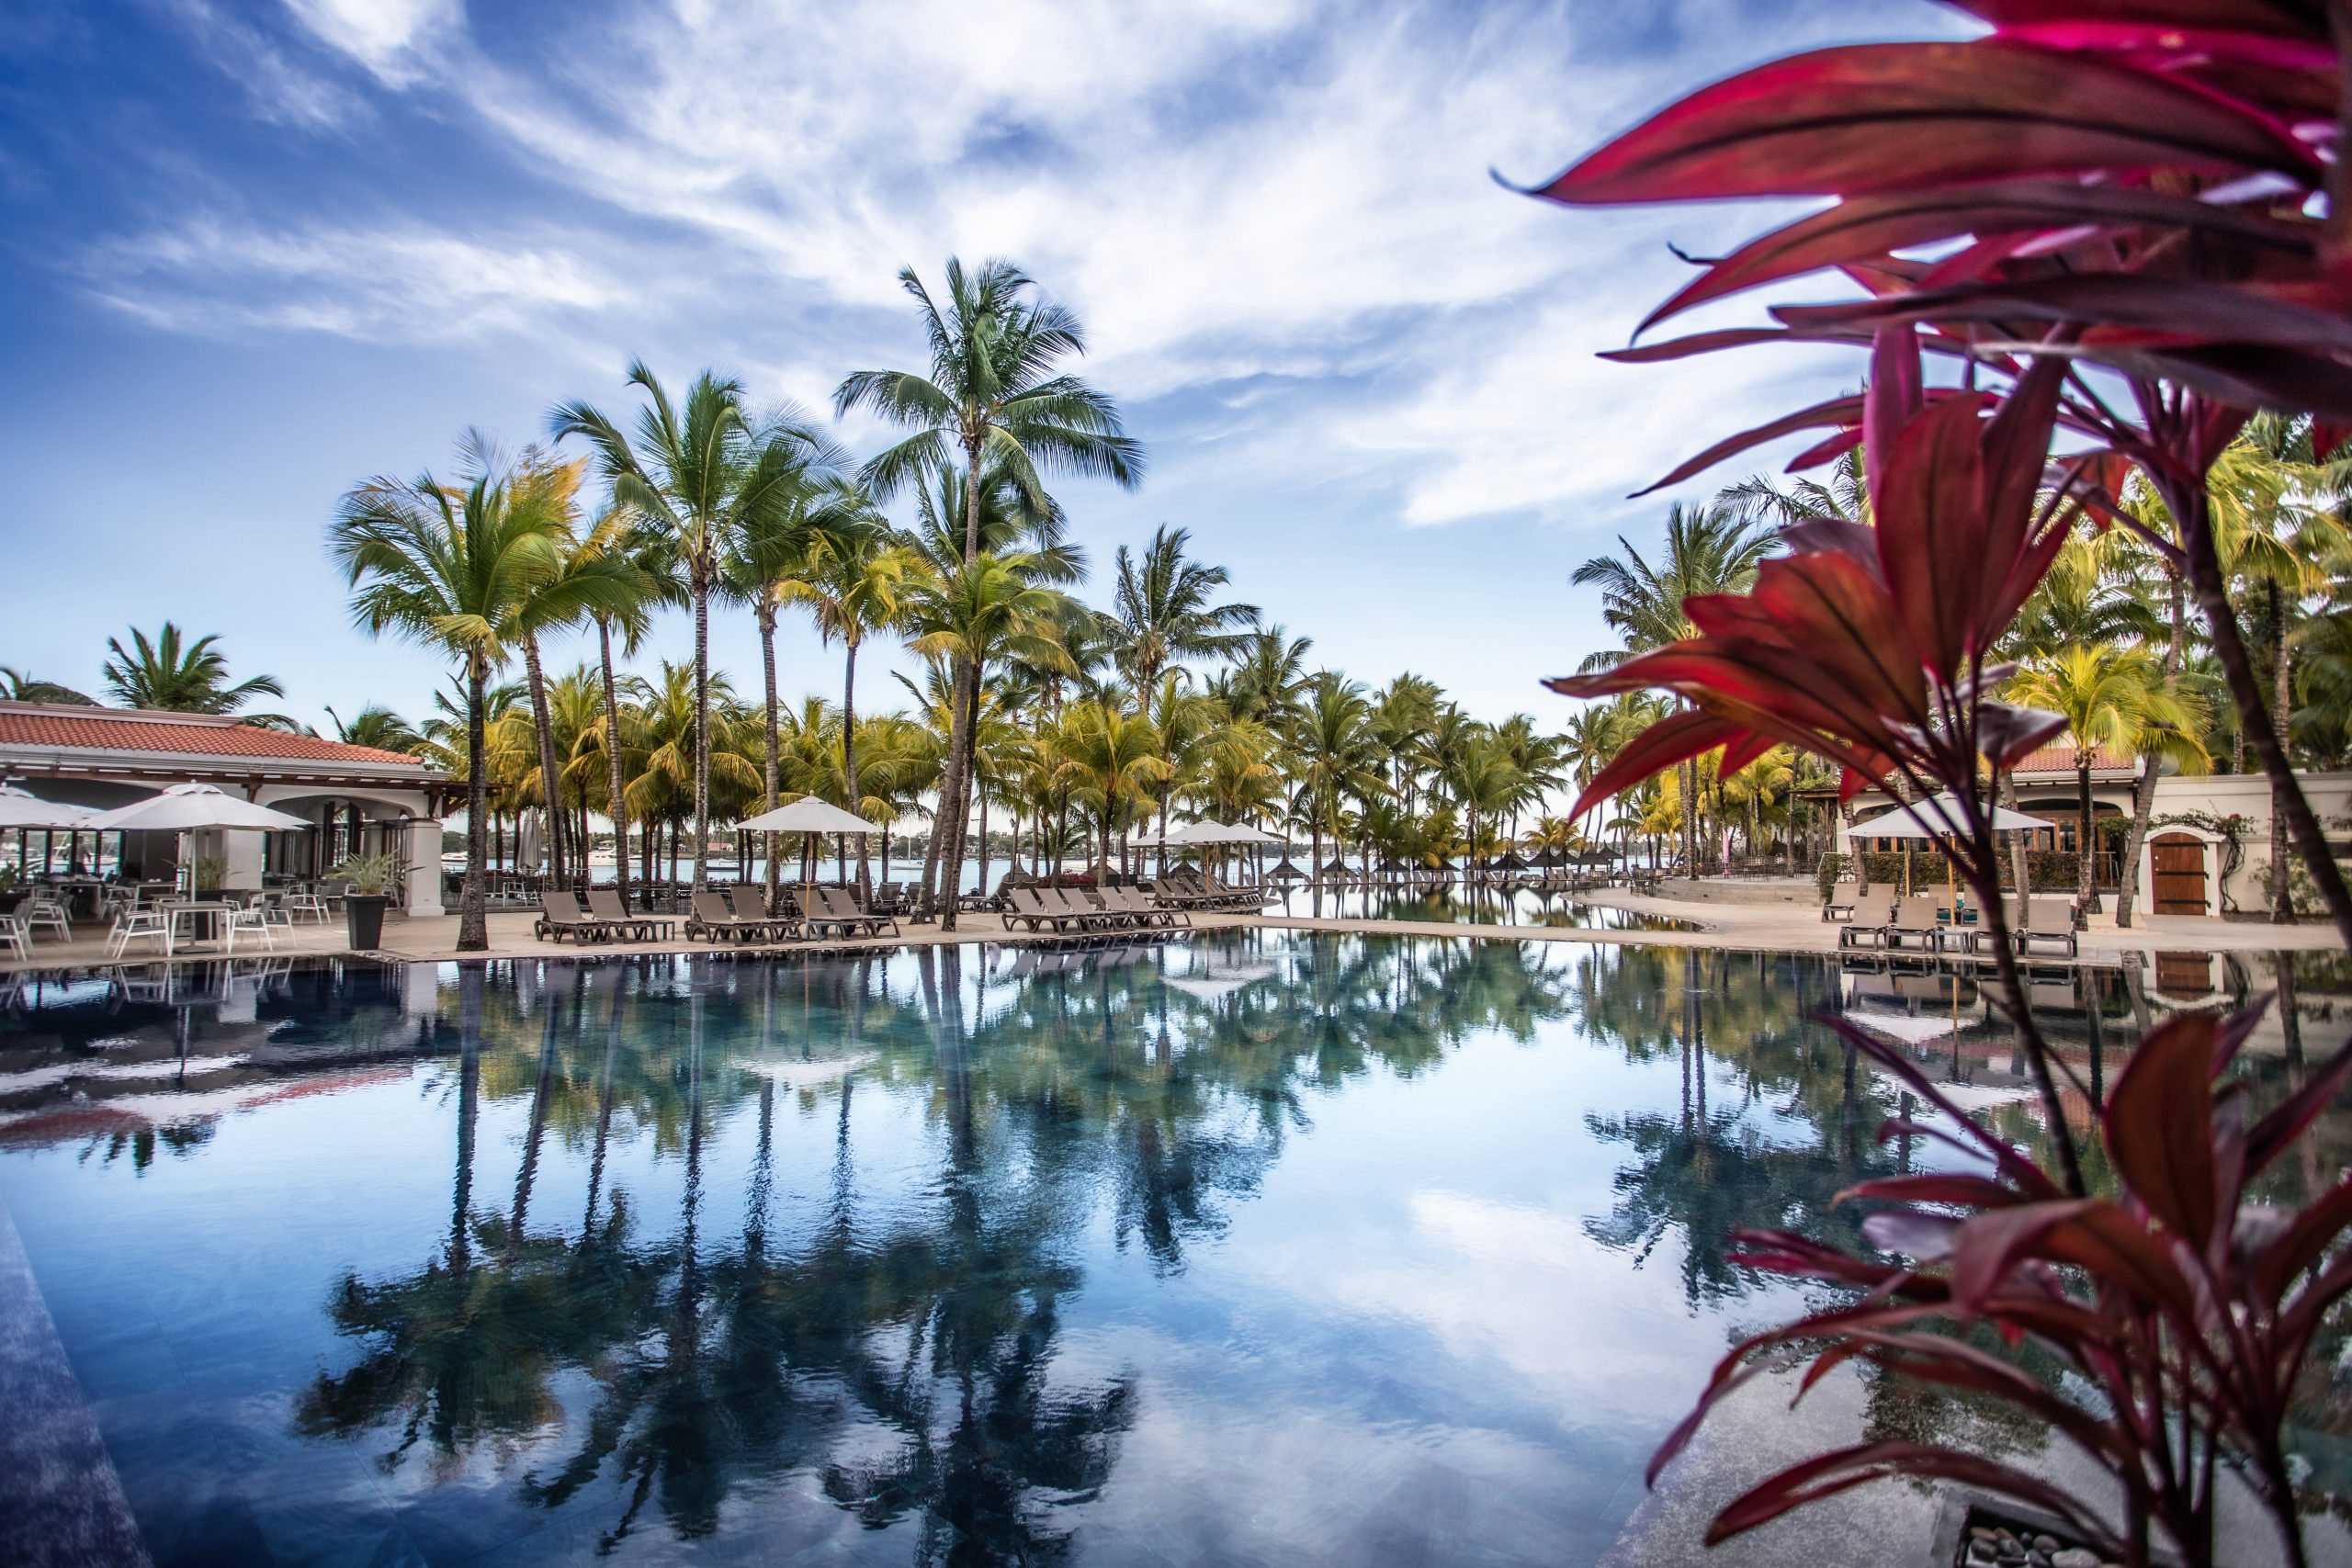 Just Honeymoons | Mauricia Beachcomber Resort & Spa, Mauritius